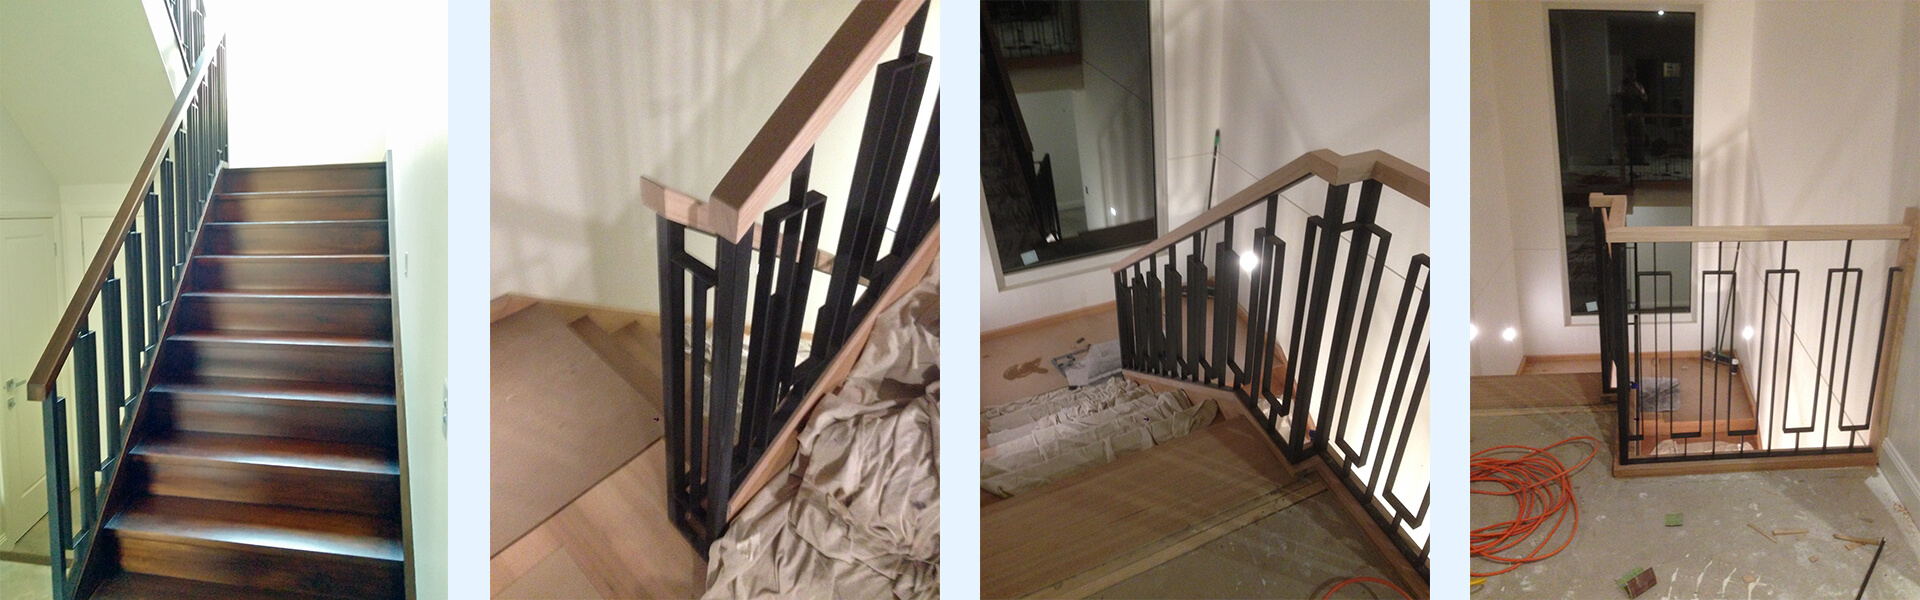 schody drewniane zabiegowe wewnętrzne z podestem, balustrady kute, poręcze drewniane